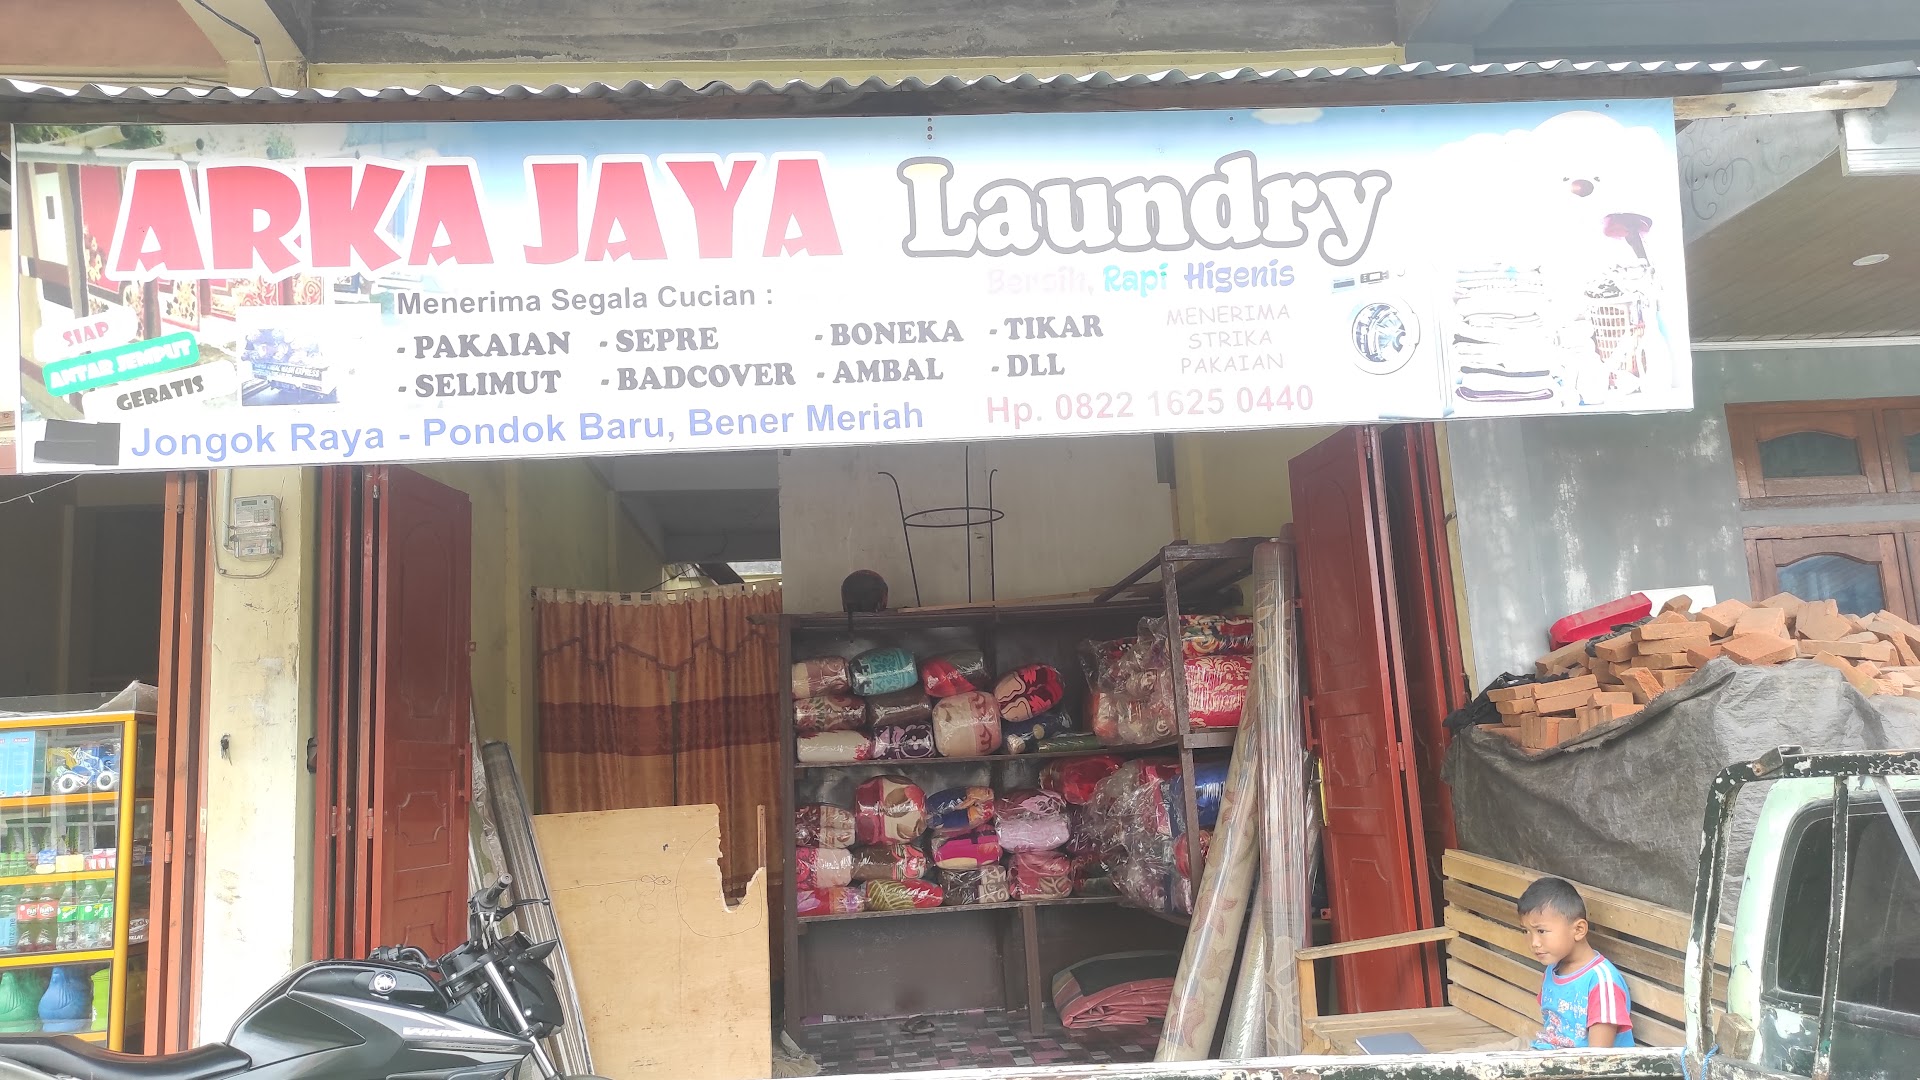 Arka Jaya Laundry Photo